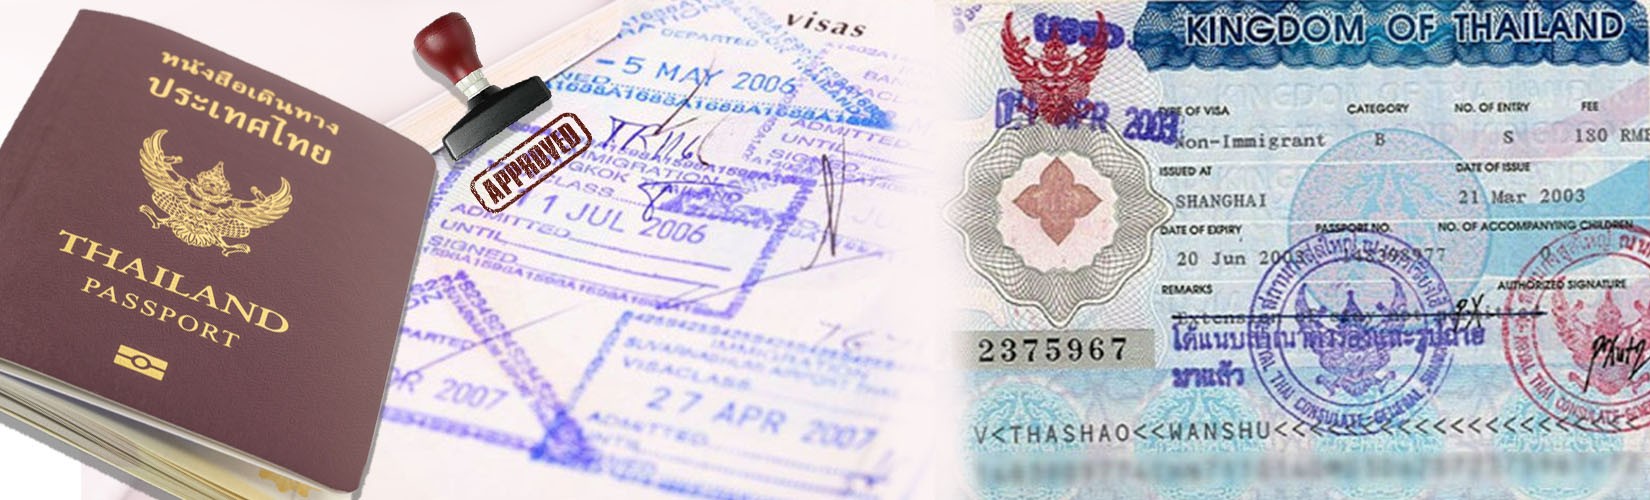 Thailand Travel Info: Complete Thailand Tourist Visa Information